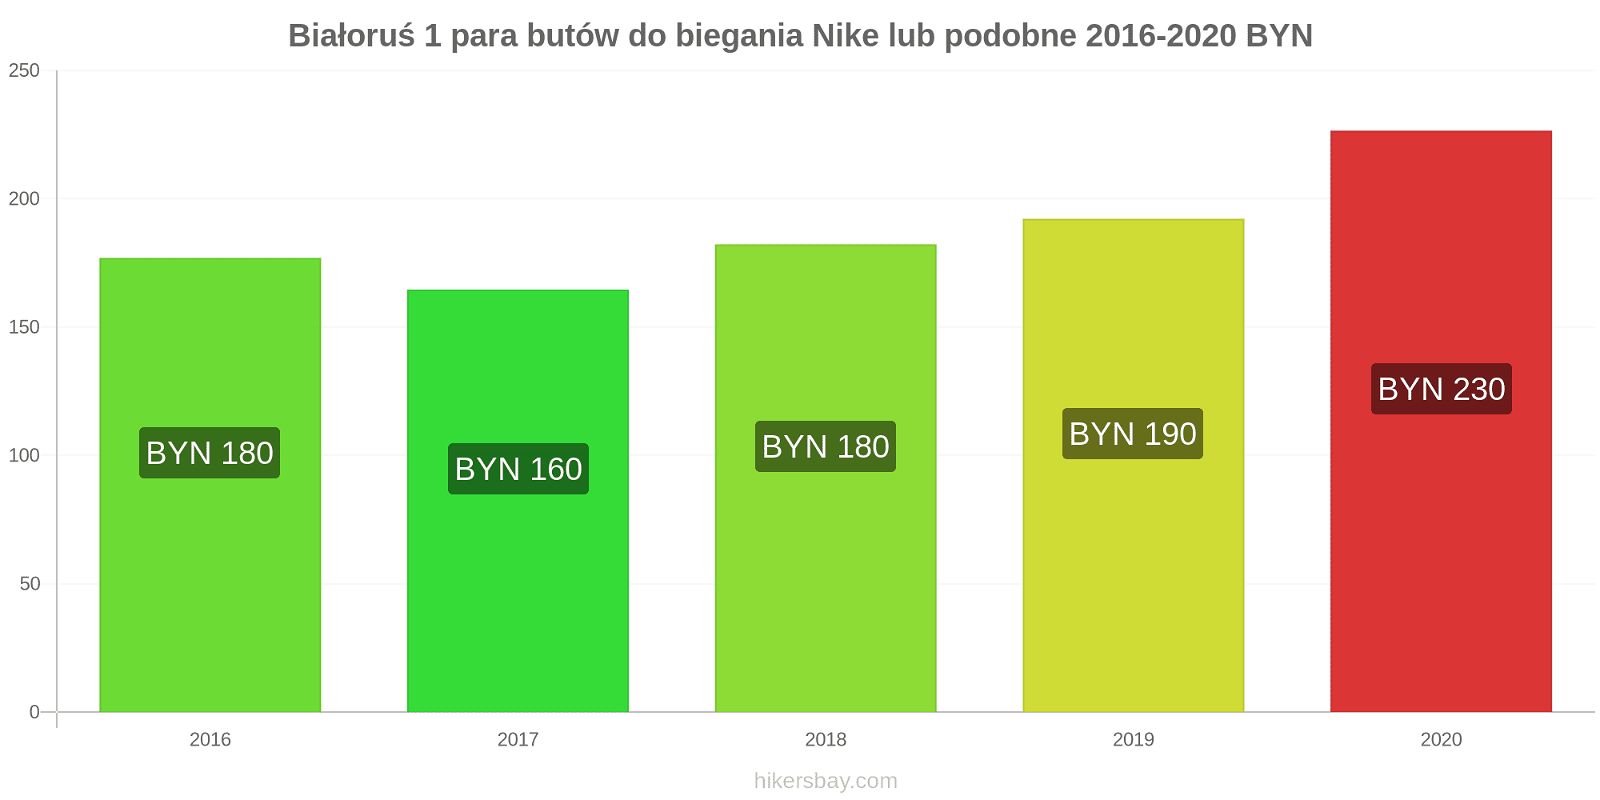 Białoruś zmiany cen 1 para butów do biegania Nike lub podobne hikersbay.com